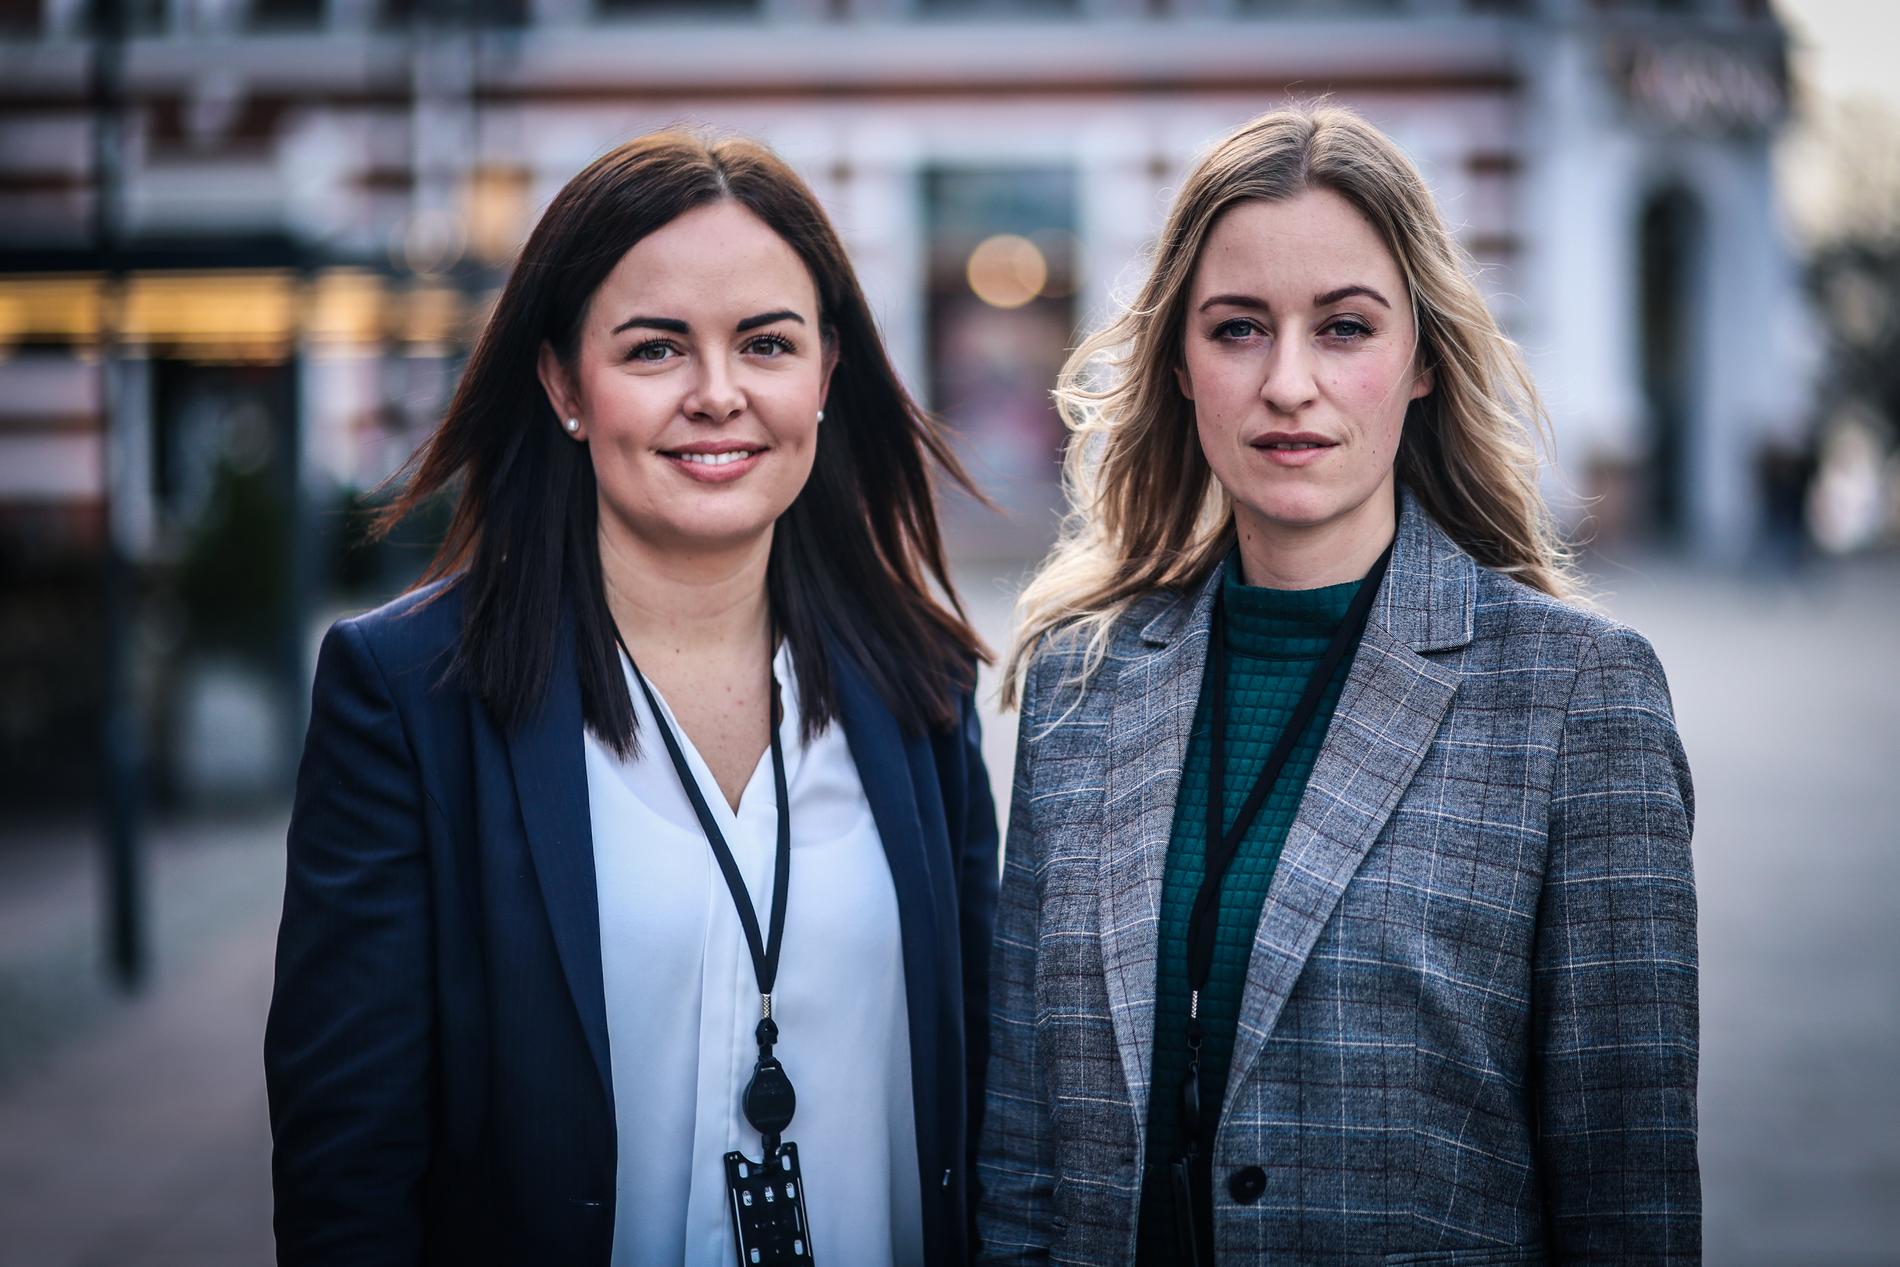 Monica Ødegård (29) og Evelyn Sjo (34) jobber begge som finansielle rådgivere i Nordea Kristiansand.